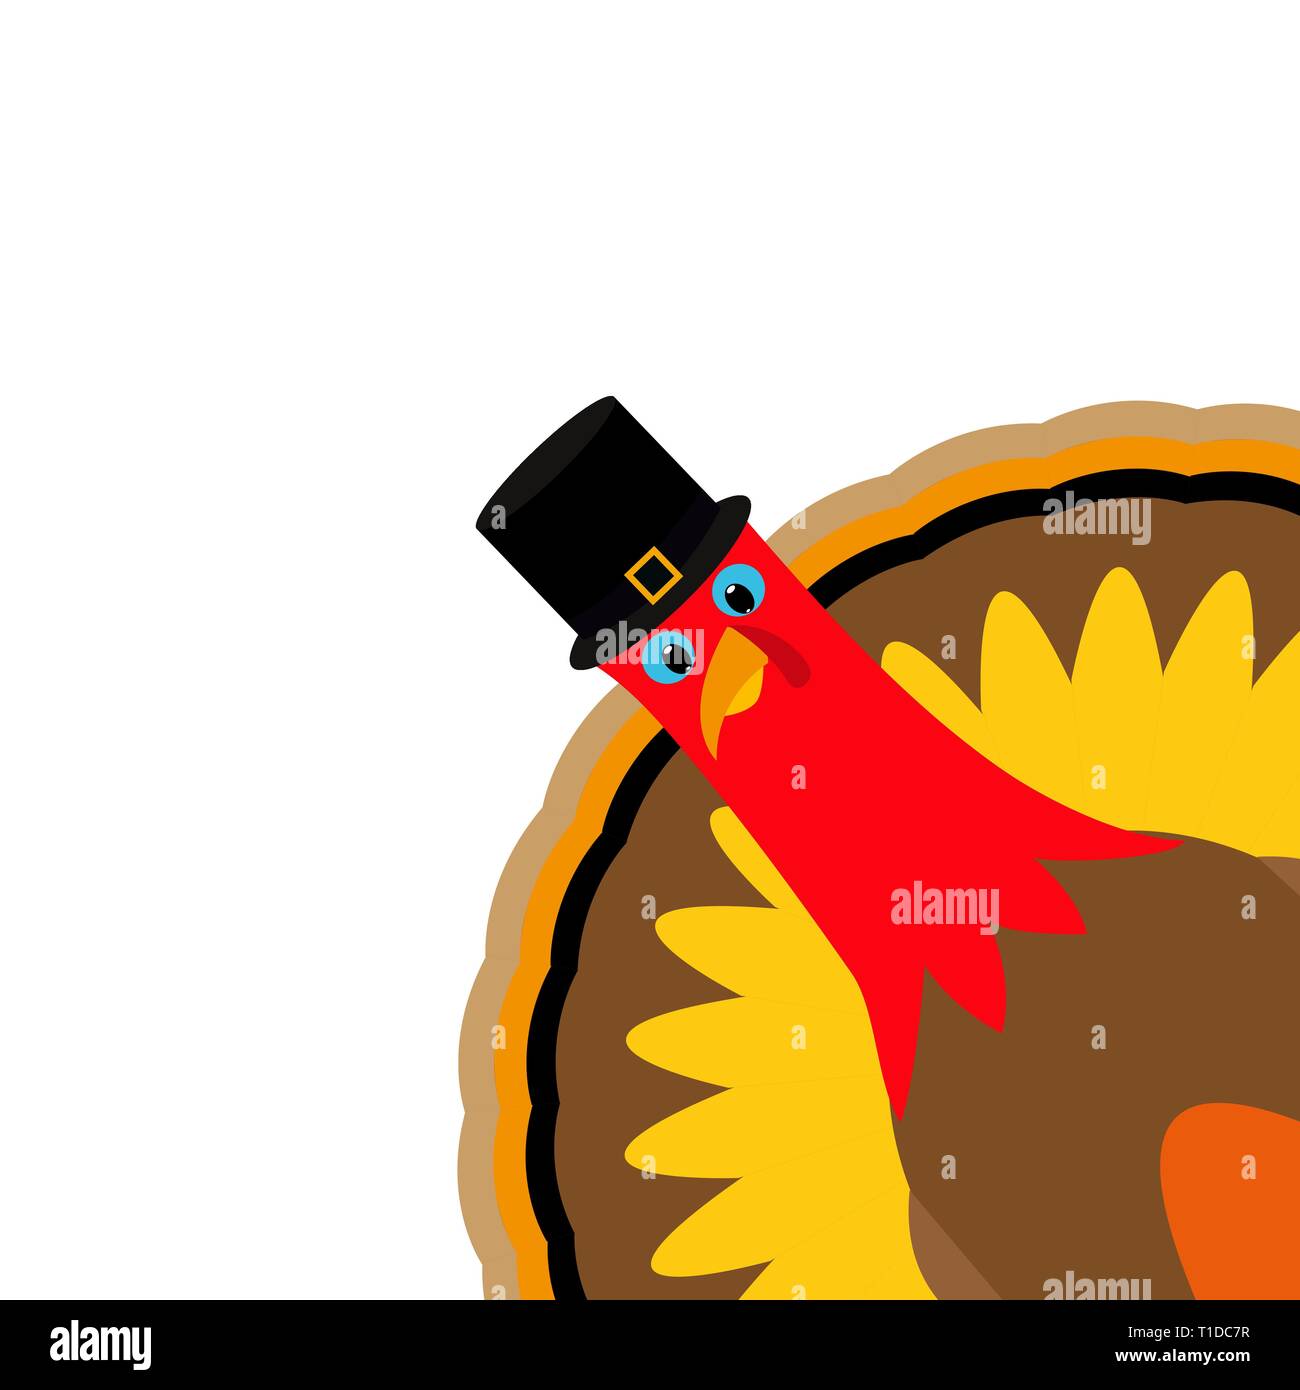 Turkey Pilgrimin on Thanksgiving Day Stock Vector